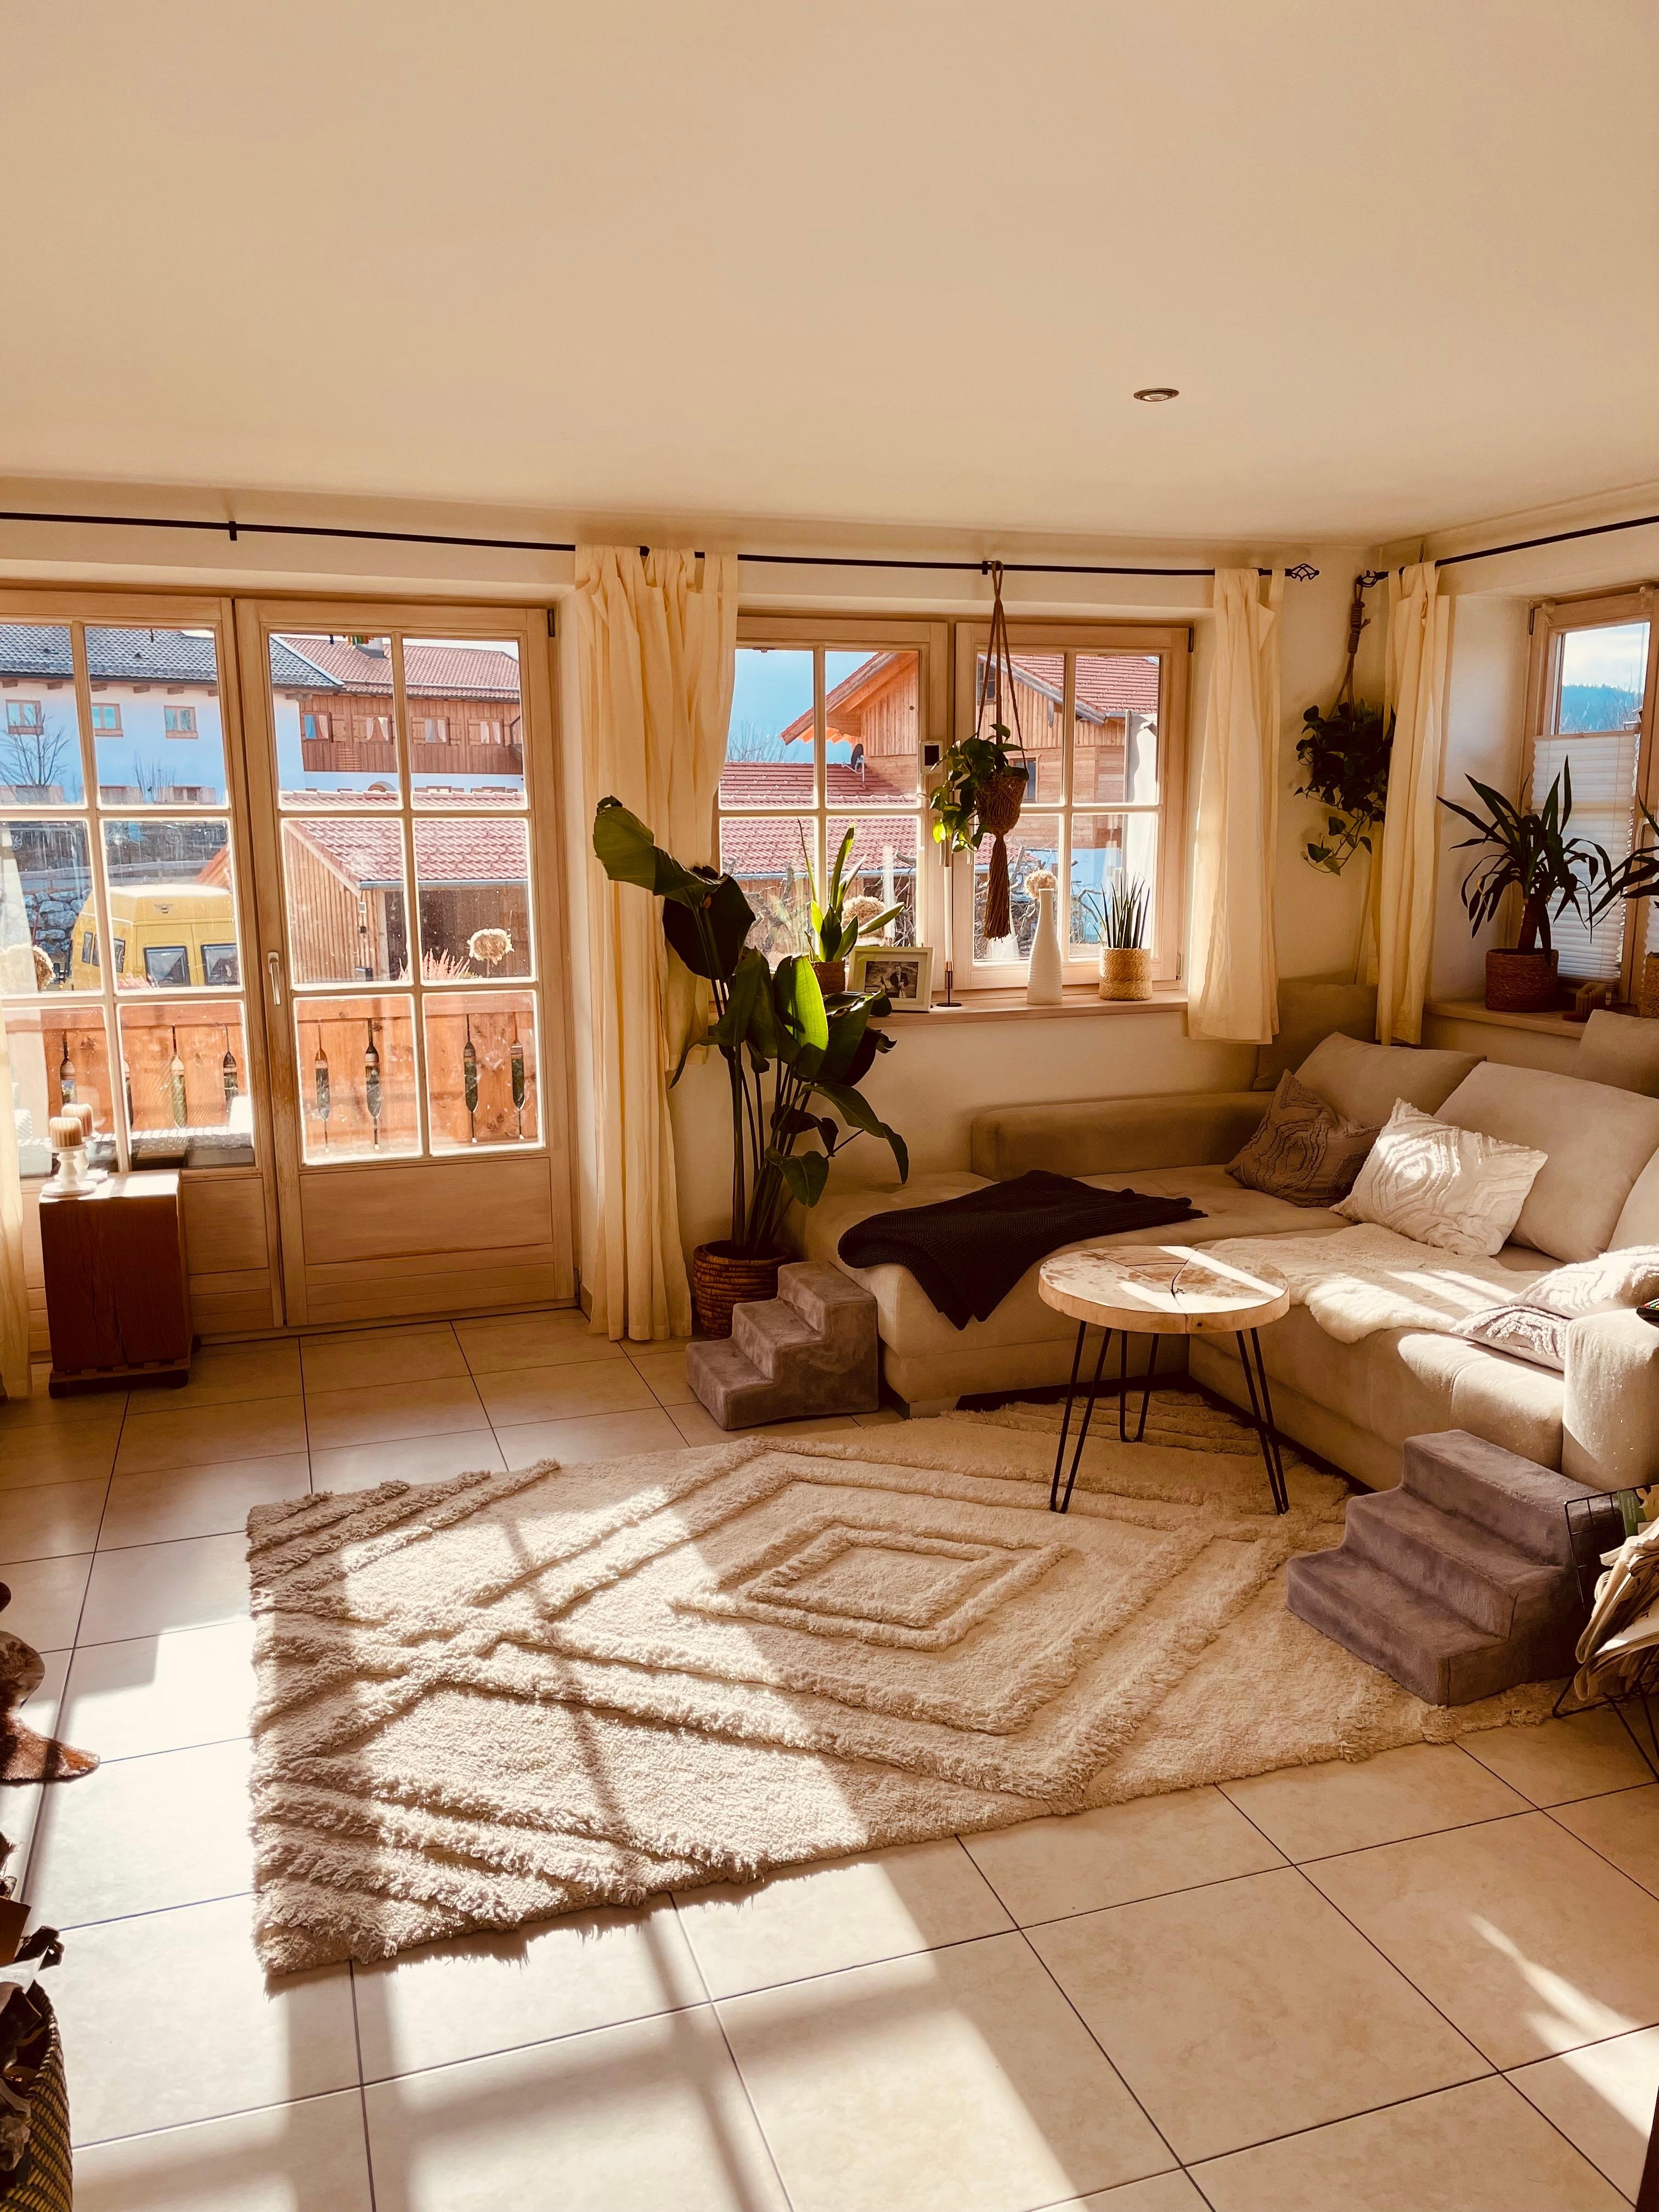 Sonnenlicht im Wohnzimmer. #couchliebe #Wohnzimmer #interior #couchmagazin #sunlightdecor #teppich #plants #indoorjungle 